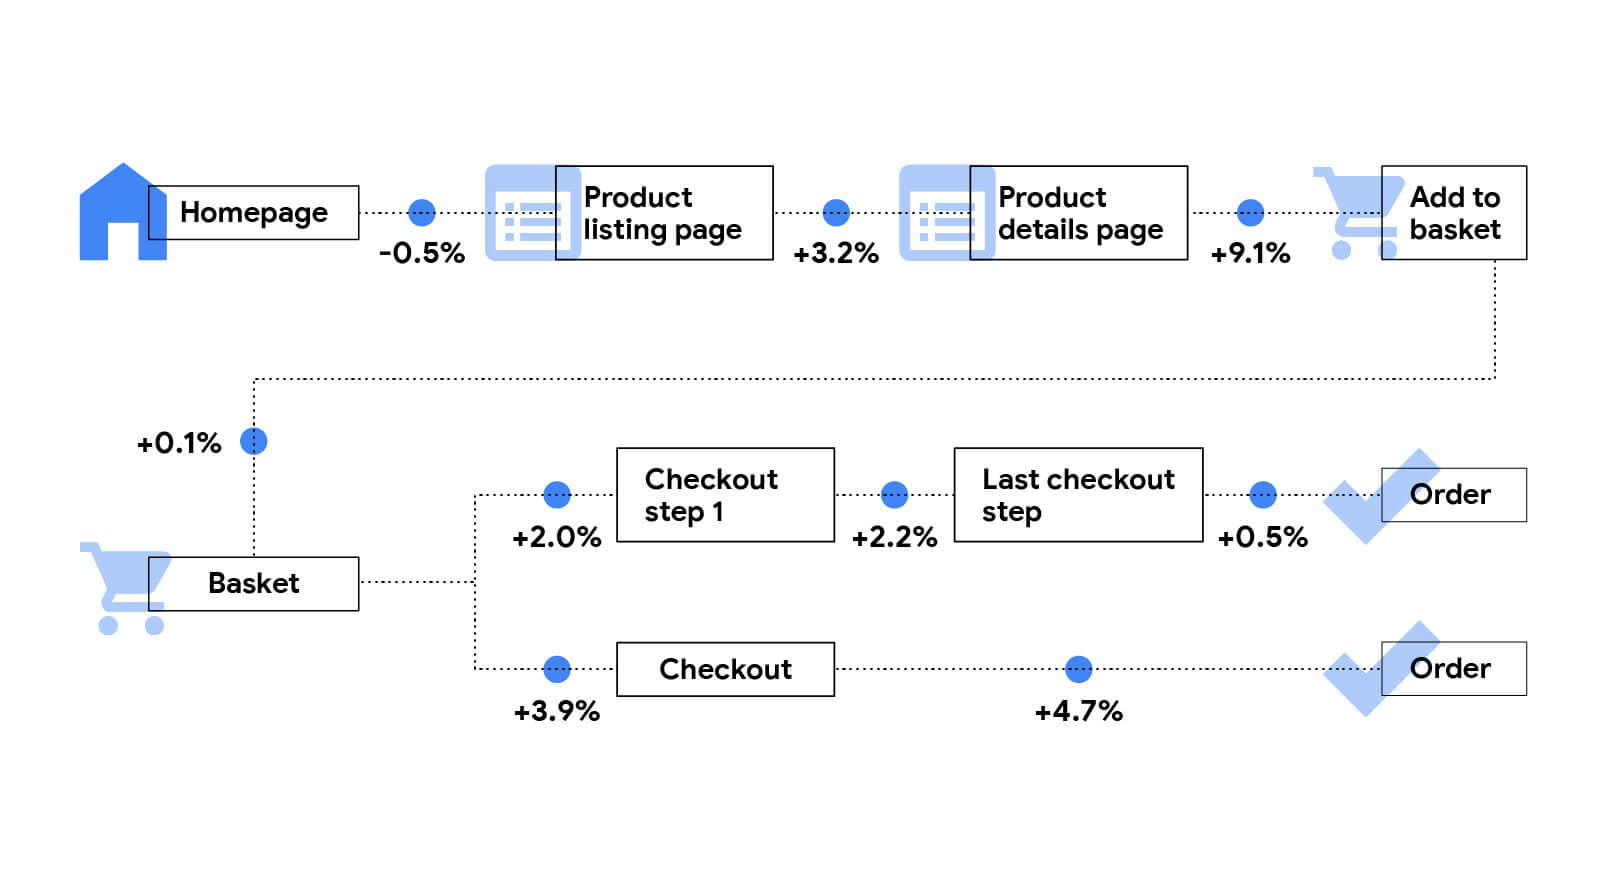 Deskripsi mendetail tentang pengaruh pengaruhnya terhadap tingkat perkembangan untuk situs retail. Beranda ke halaman Listingan Produk: -0.5%. Halaman Listingan Produk ke halaman Detail Produk: 3,2%. Halaman Detail Produk ke halaman Tambahkan Ke Keranjang: 9.1%. Tambahkan ke halaman Keranjang ke halaman Keranjang: 0,1%. Halaman keranjang ke halaman Checkout: 3,9%. Halaman Checkout untuk Pesanan: 4,7%.